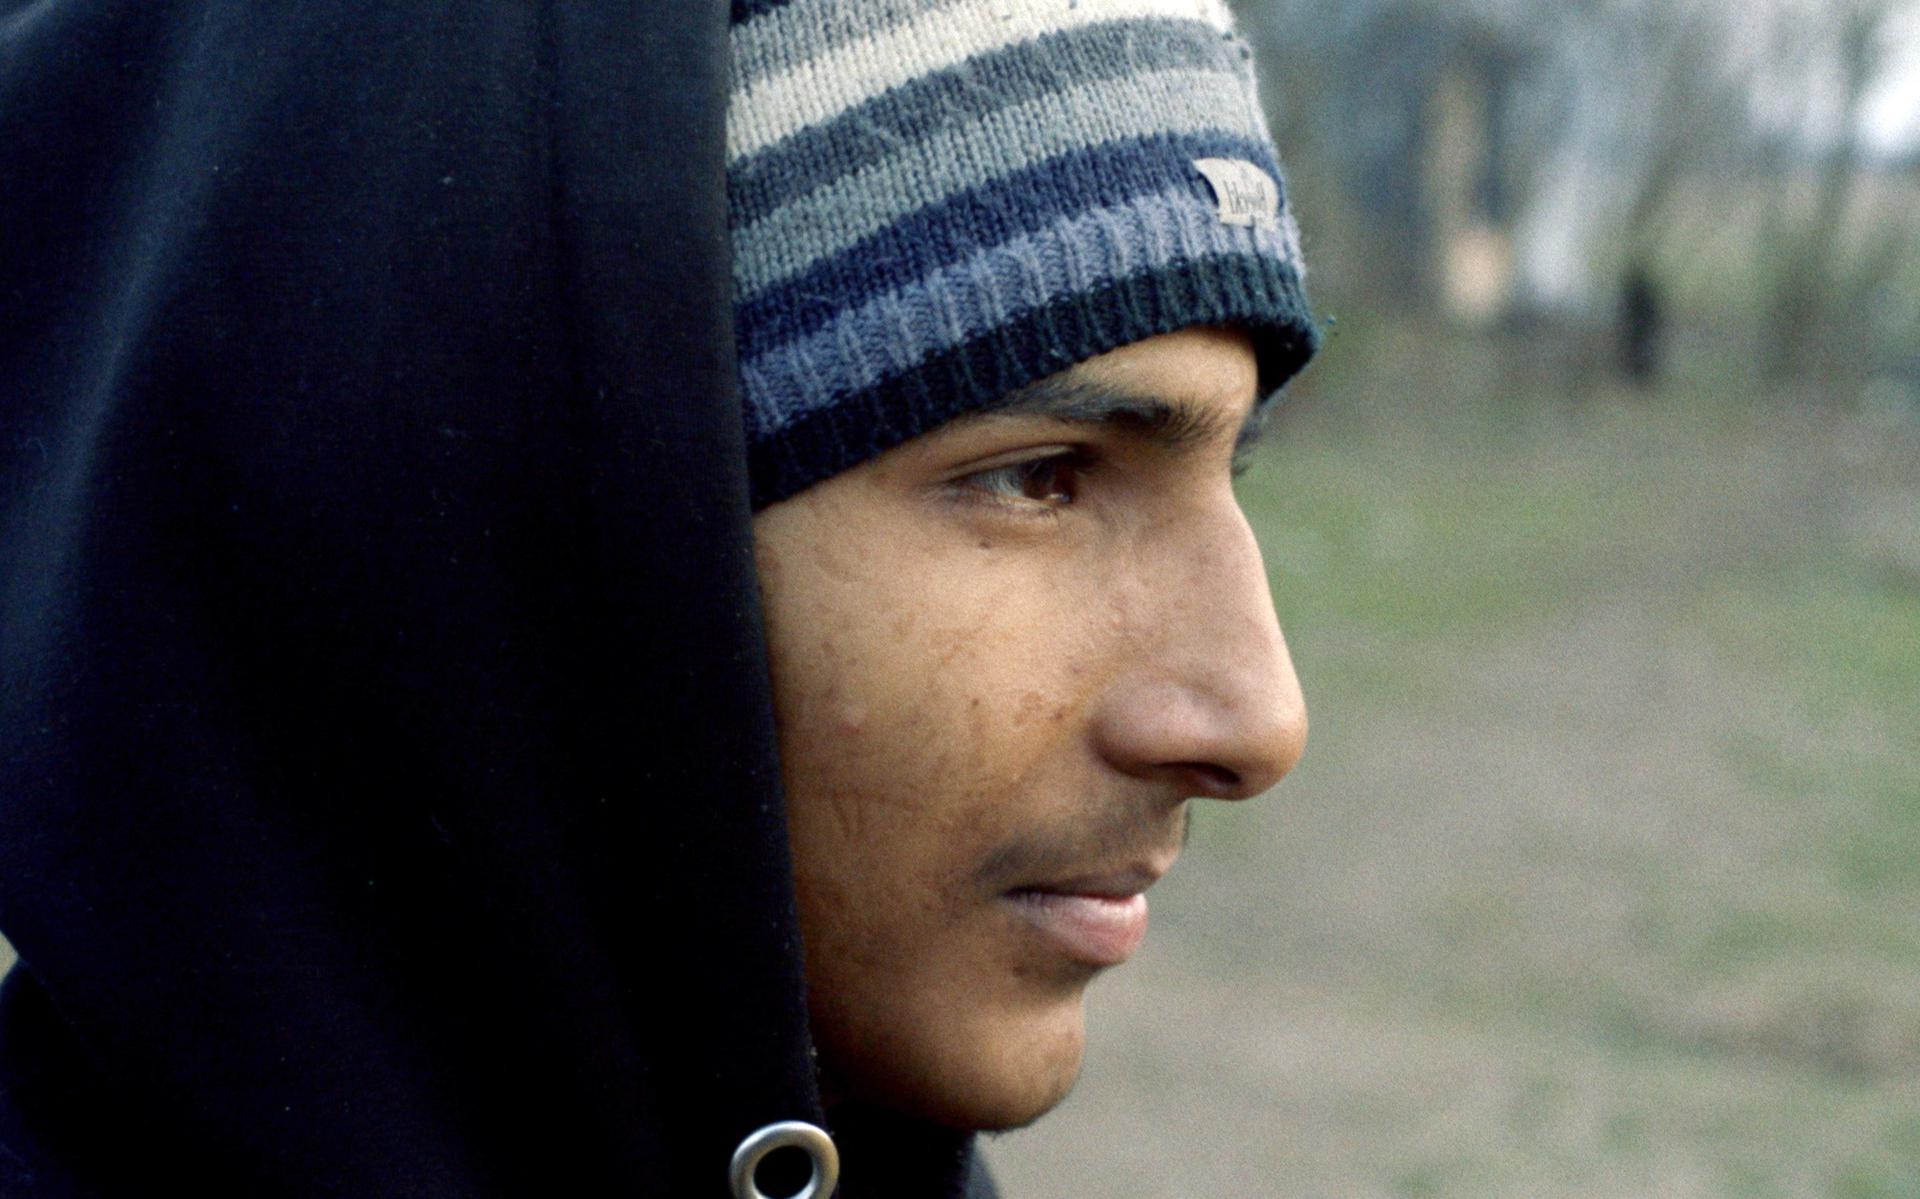 Emmense dengan latar belakang Somalia mempersembahkan film dokumenter pemenang penghargaan Shadow Game kepada Kinepolis Emmen.  Sebuah film tentang orang-orang muda yang melarikan diri dari perang dan kekerasan